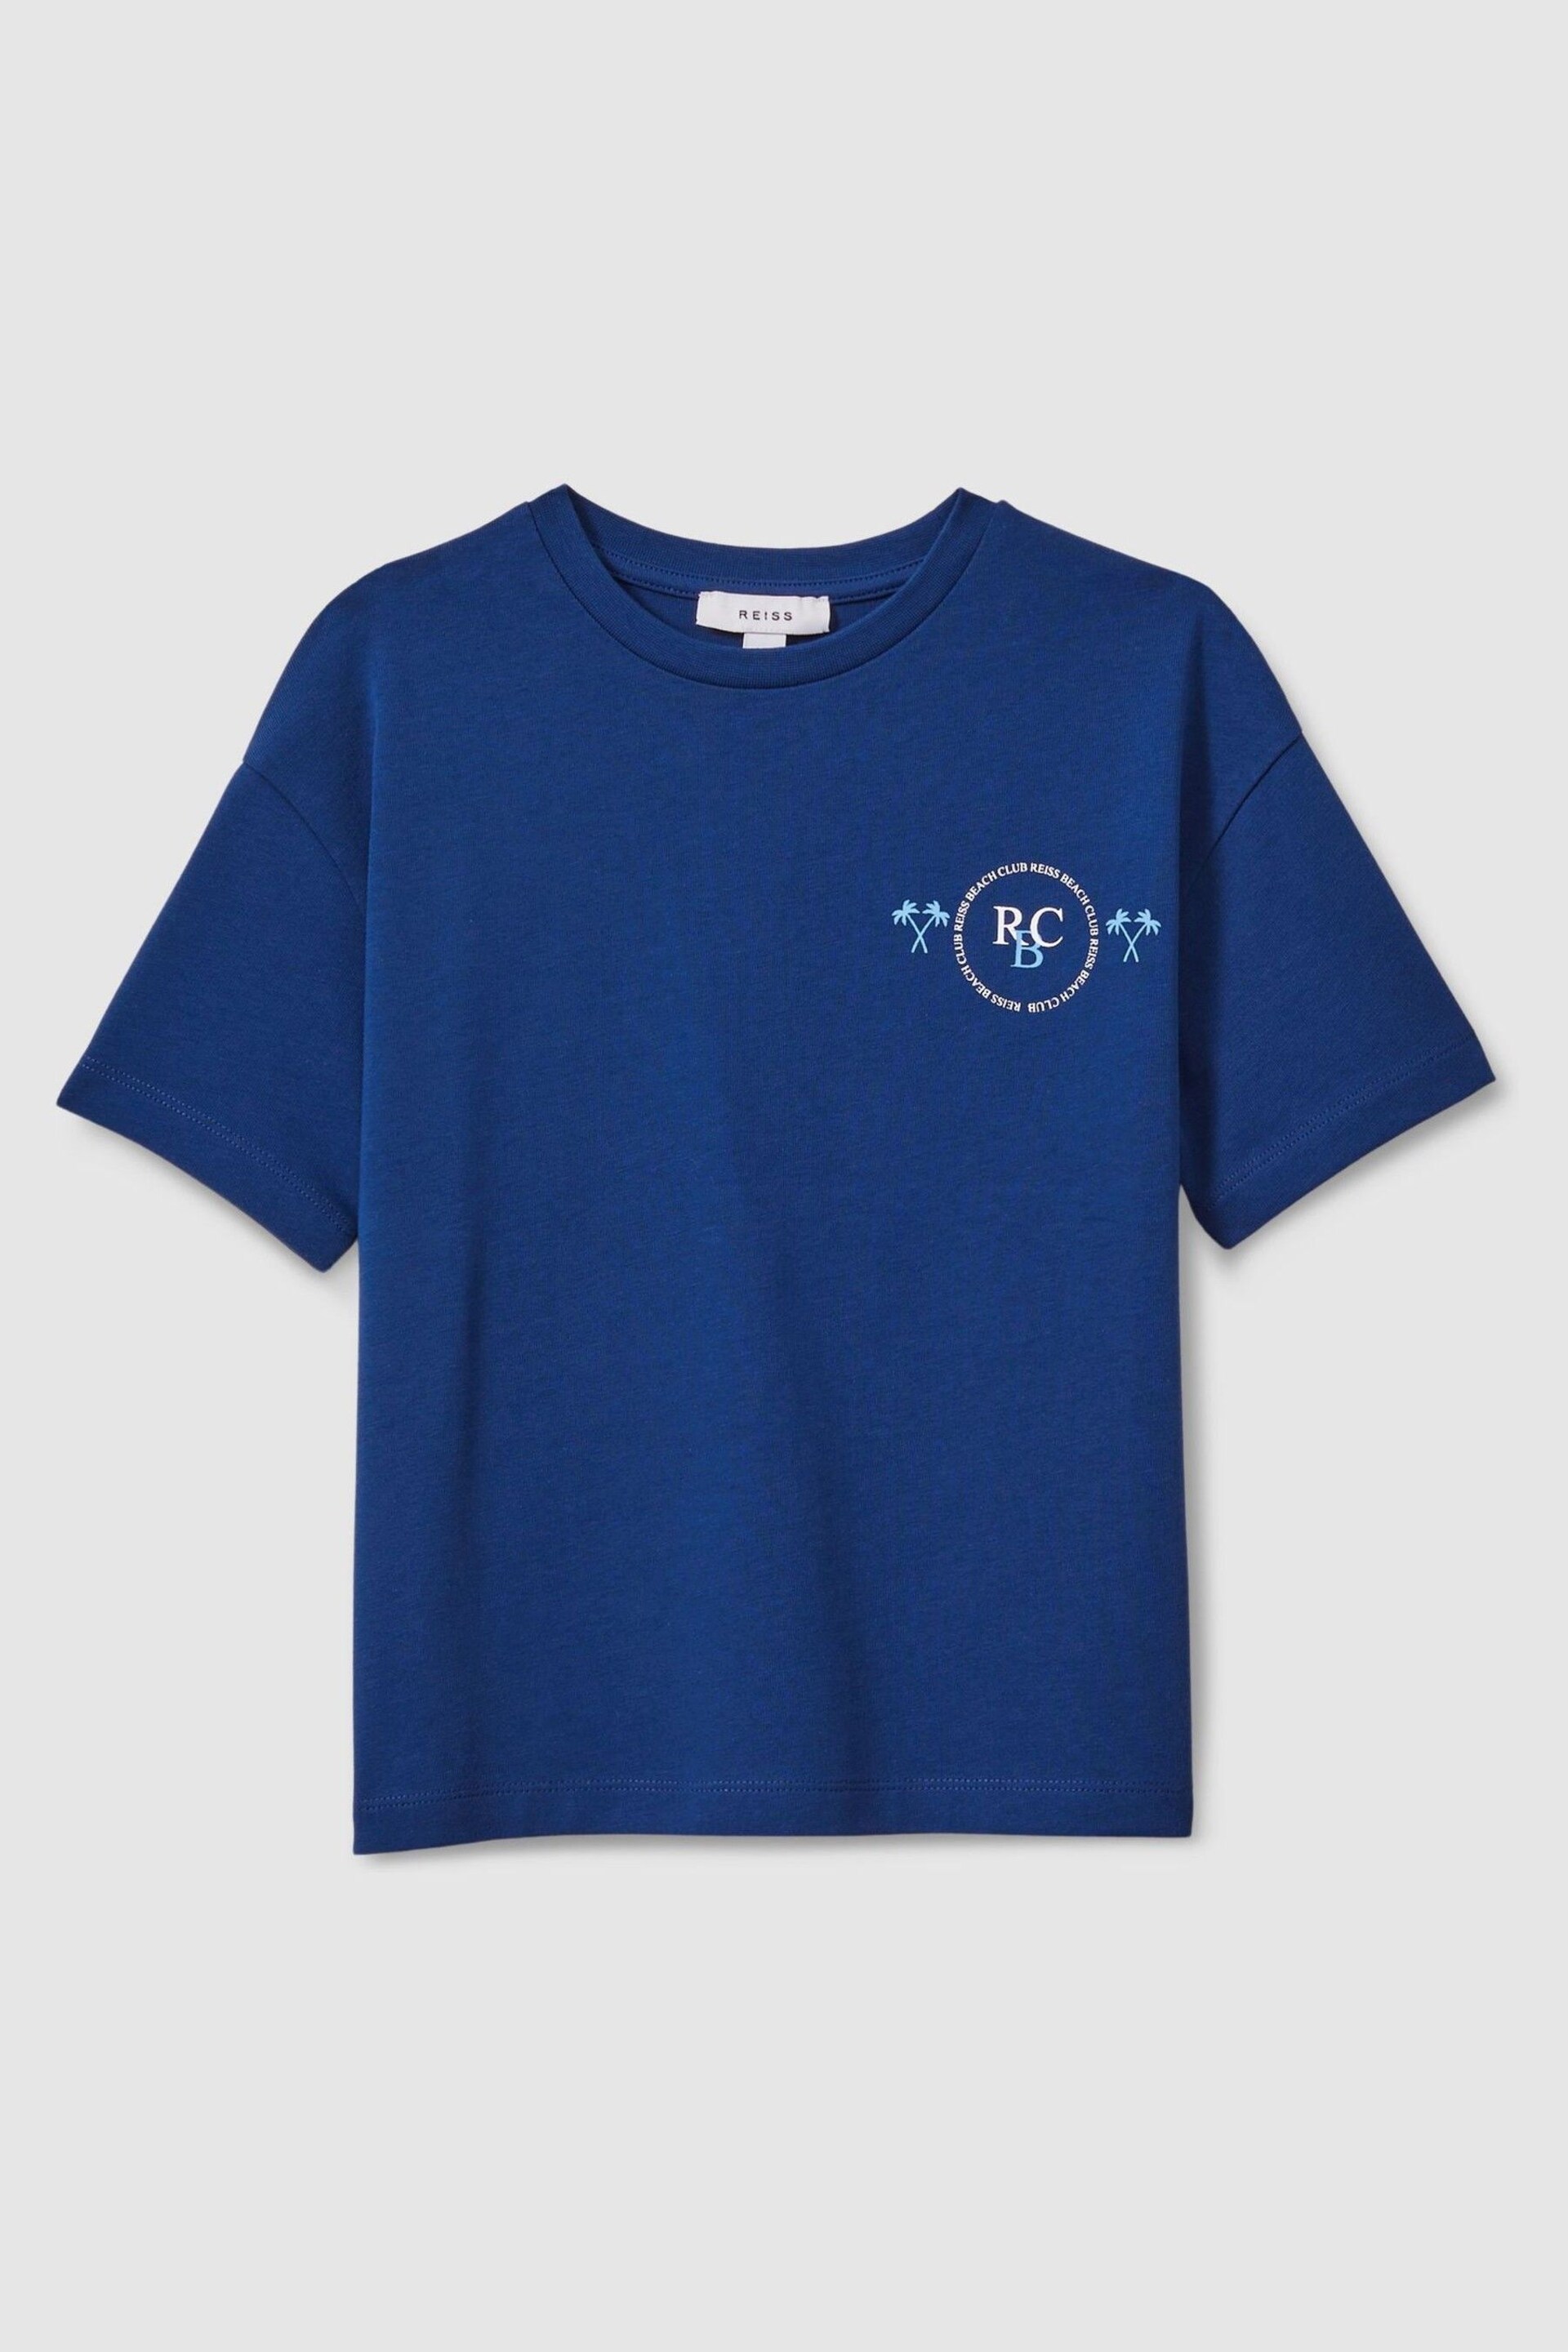 Reiss Lapis Blue Palm Cotton Crew Neck Motif T-Shirt - Image 1 of 3